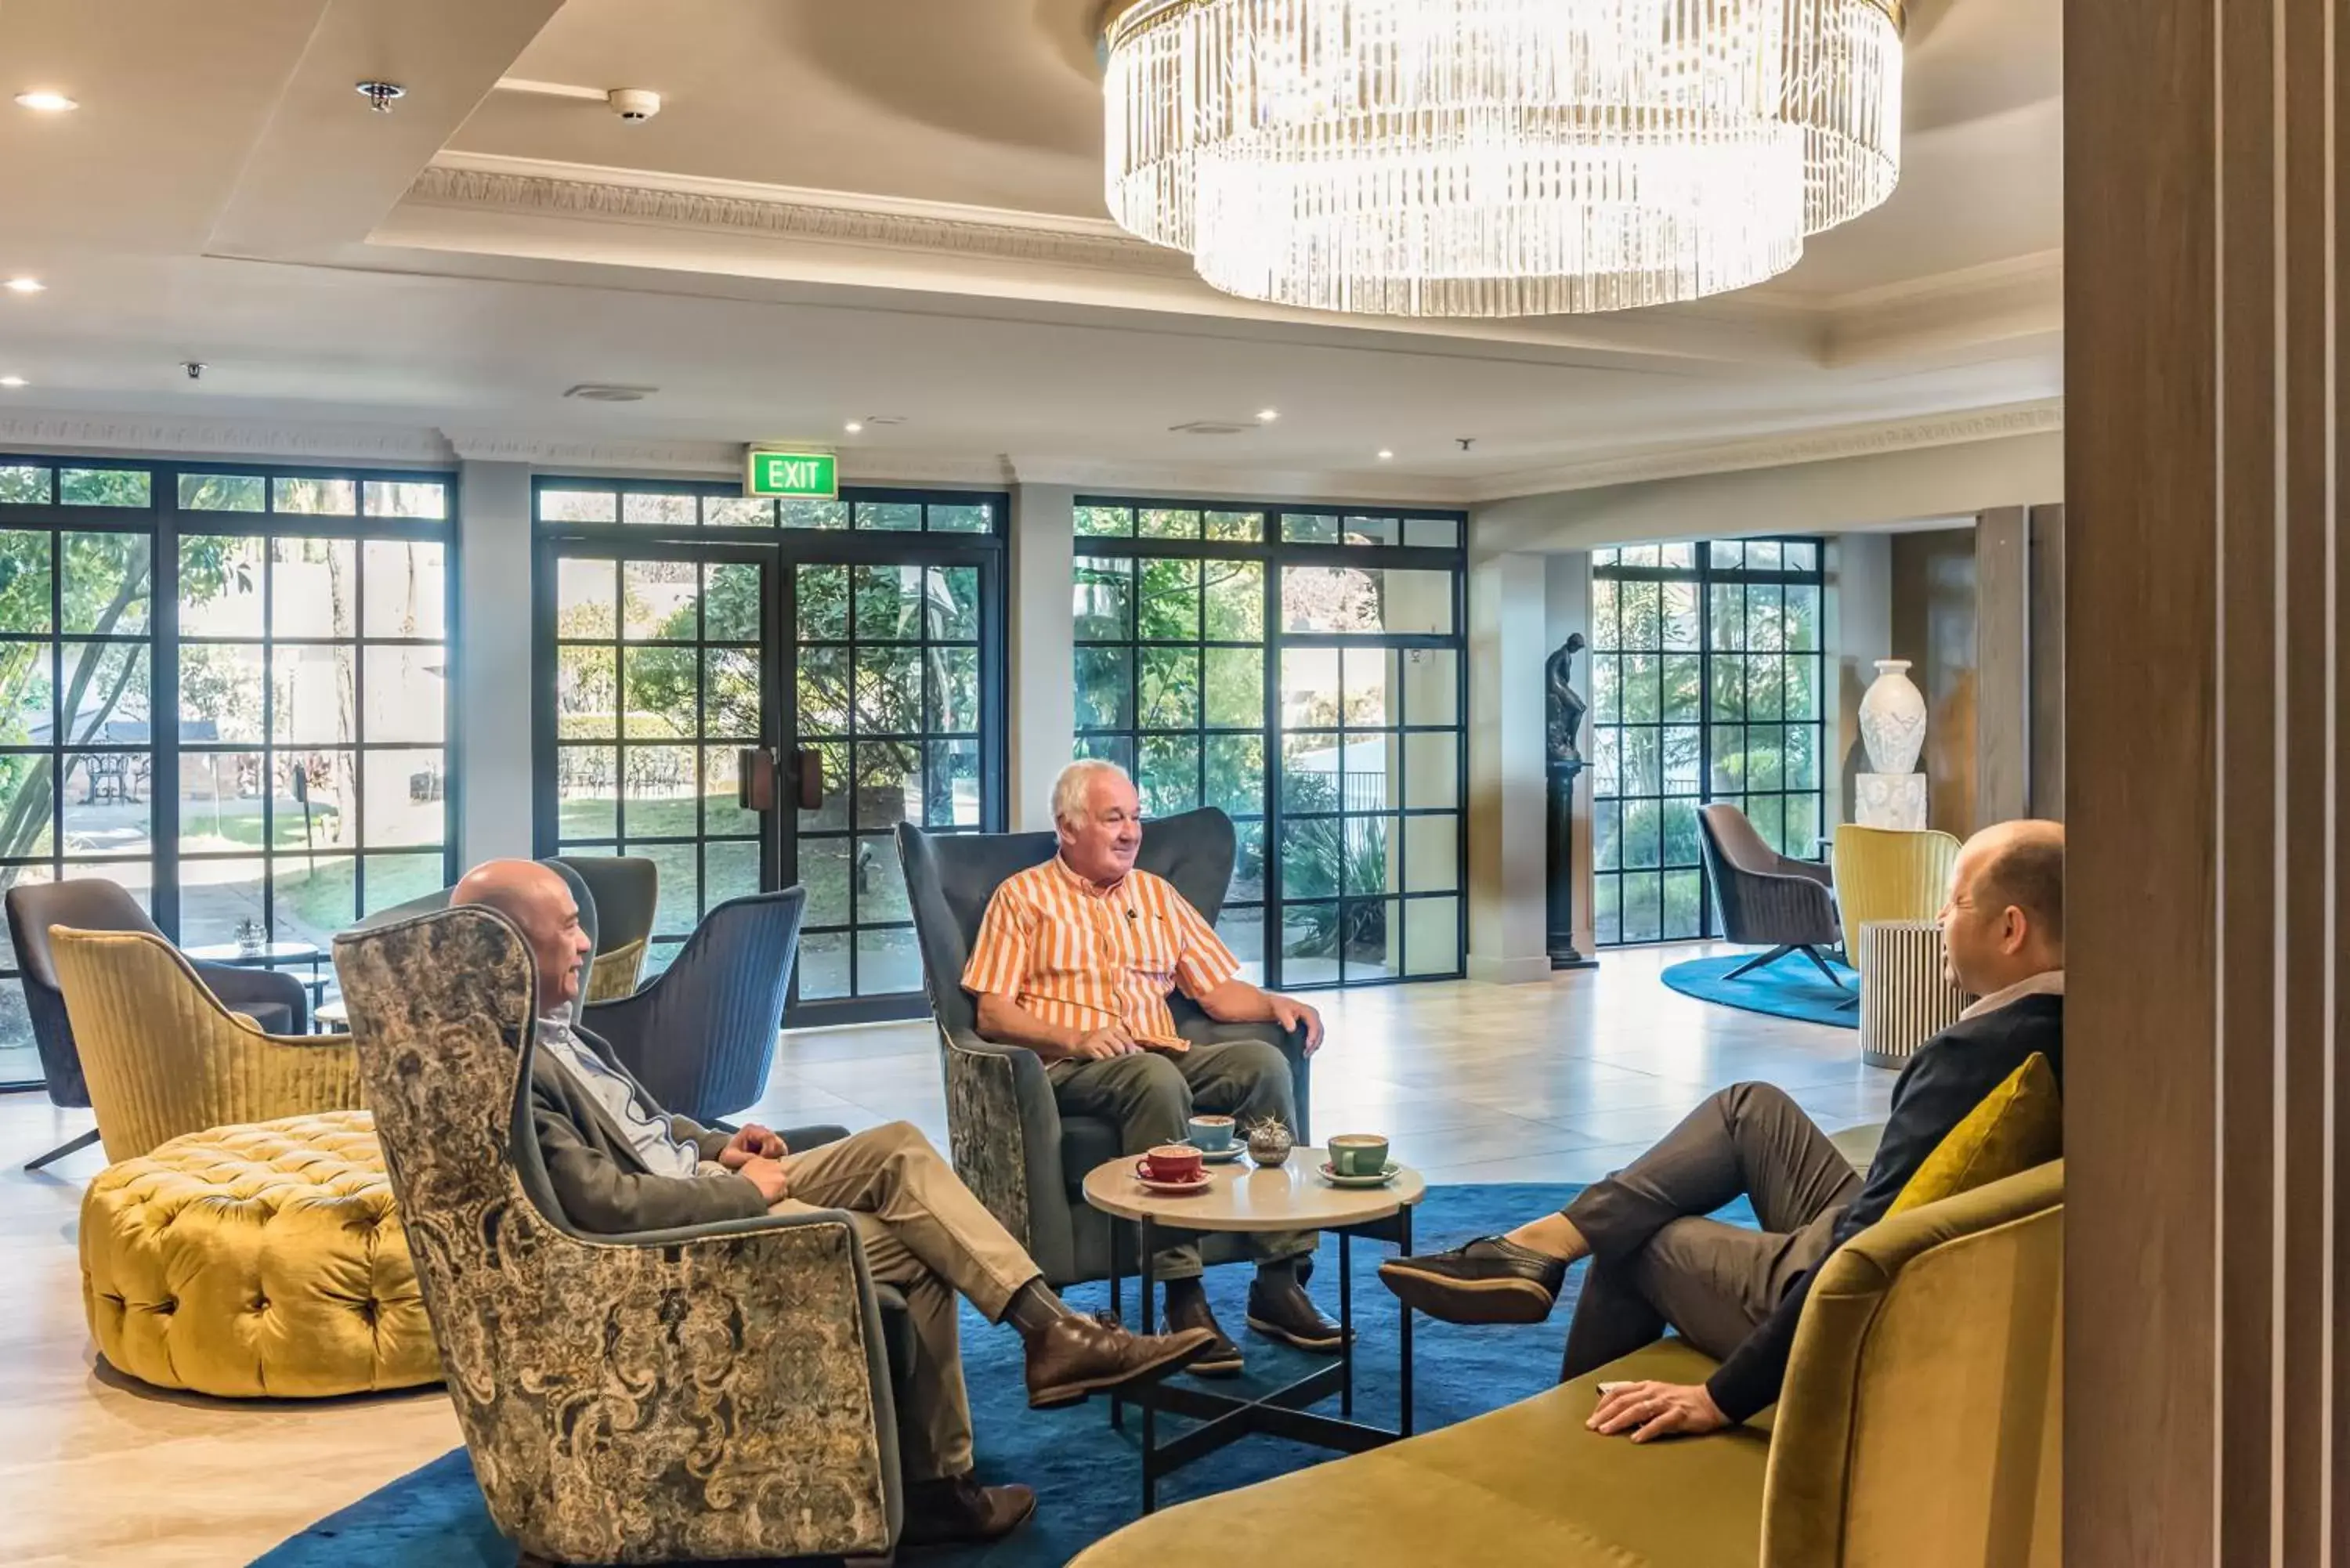 Lobby or reception in Distinction Hotel Rotorua